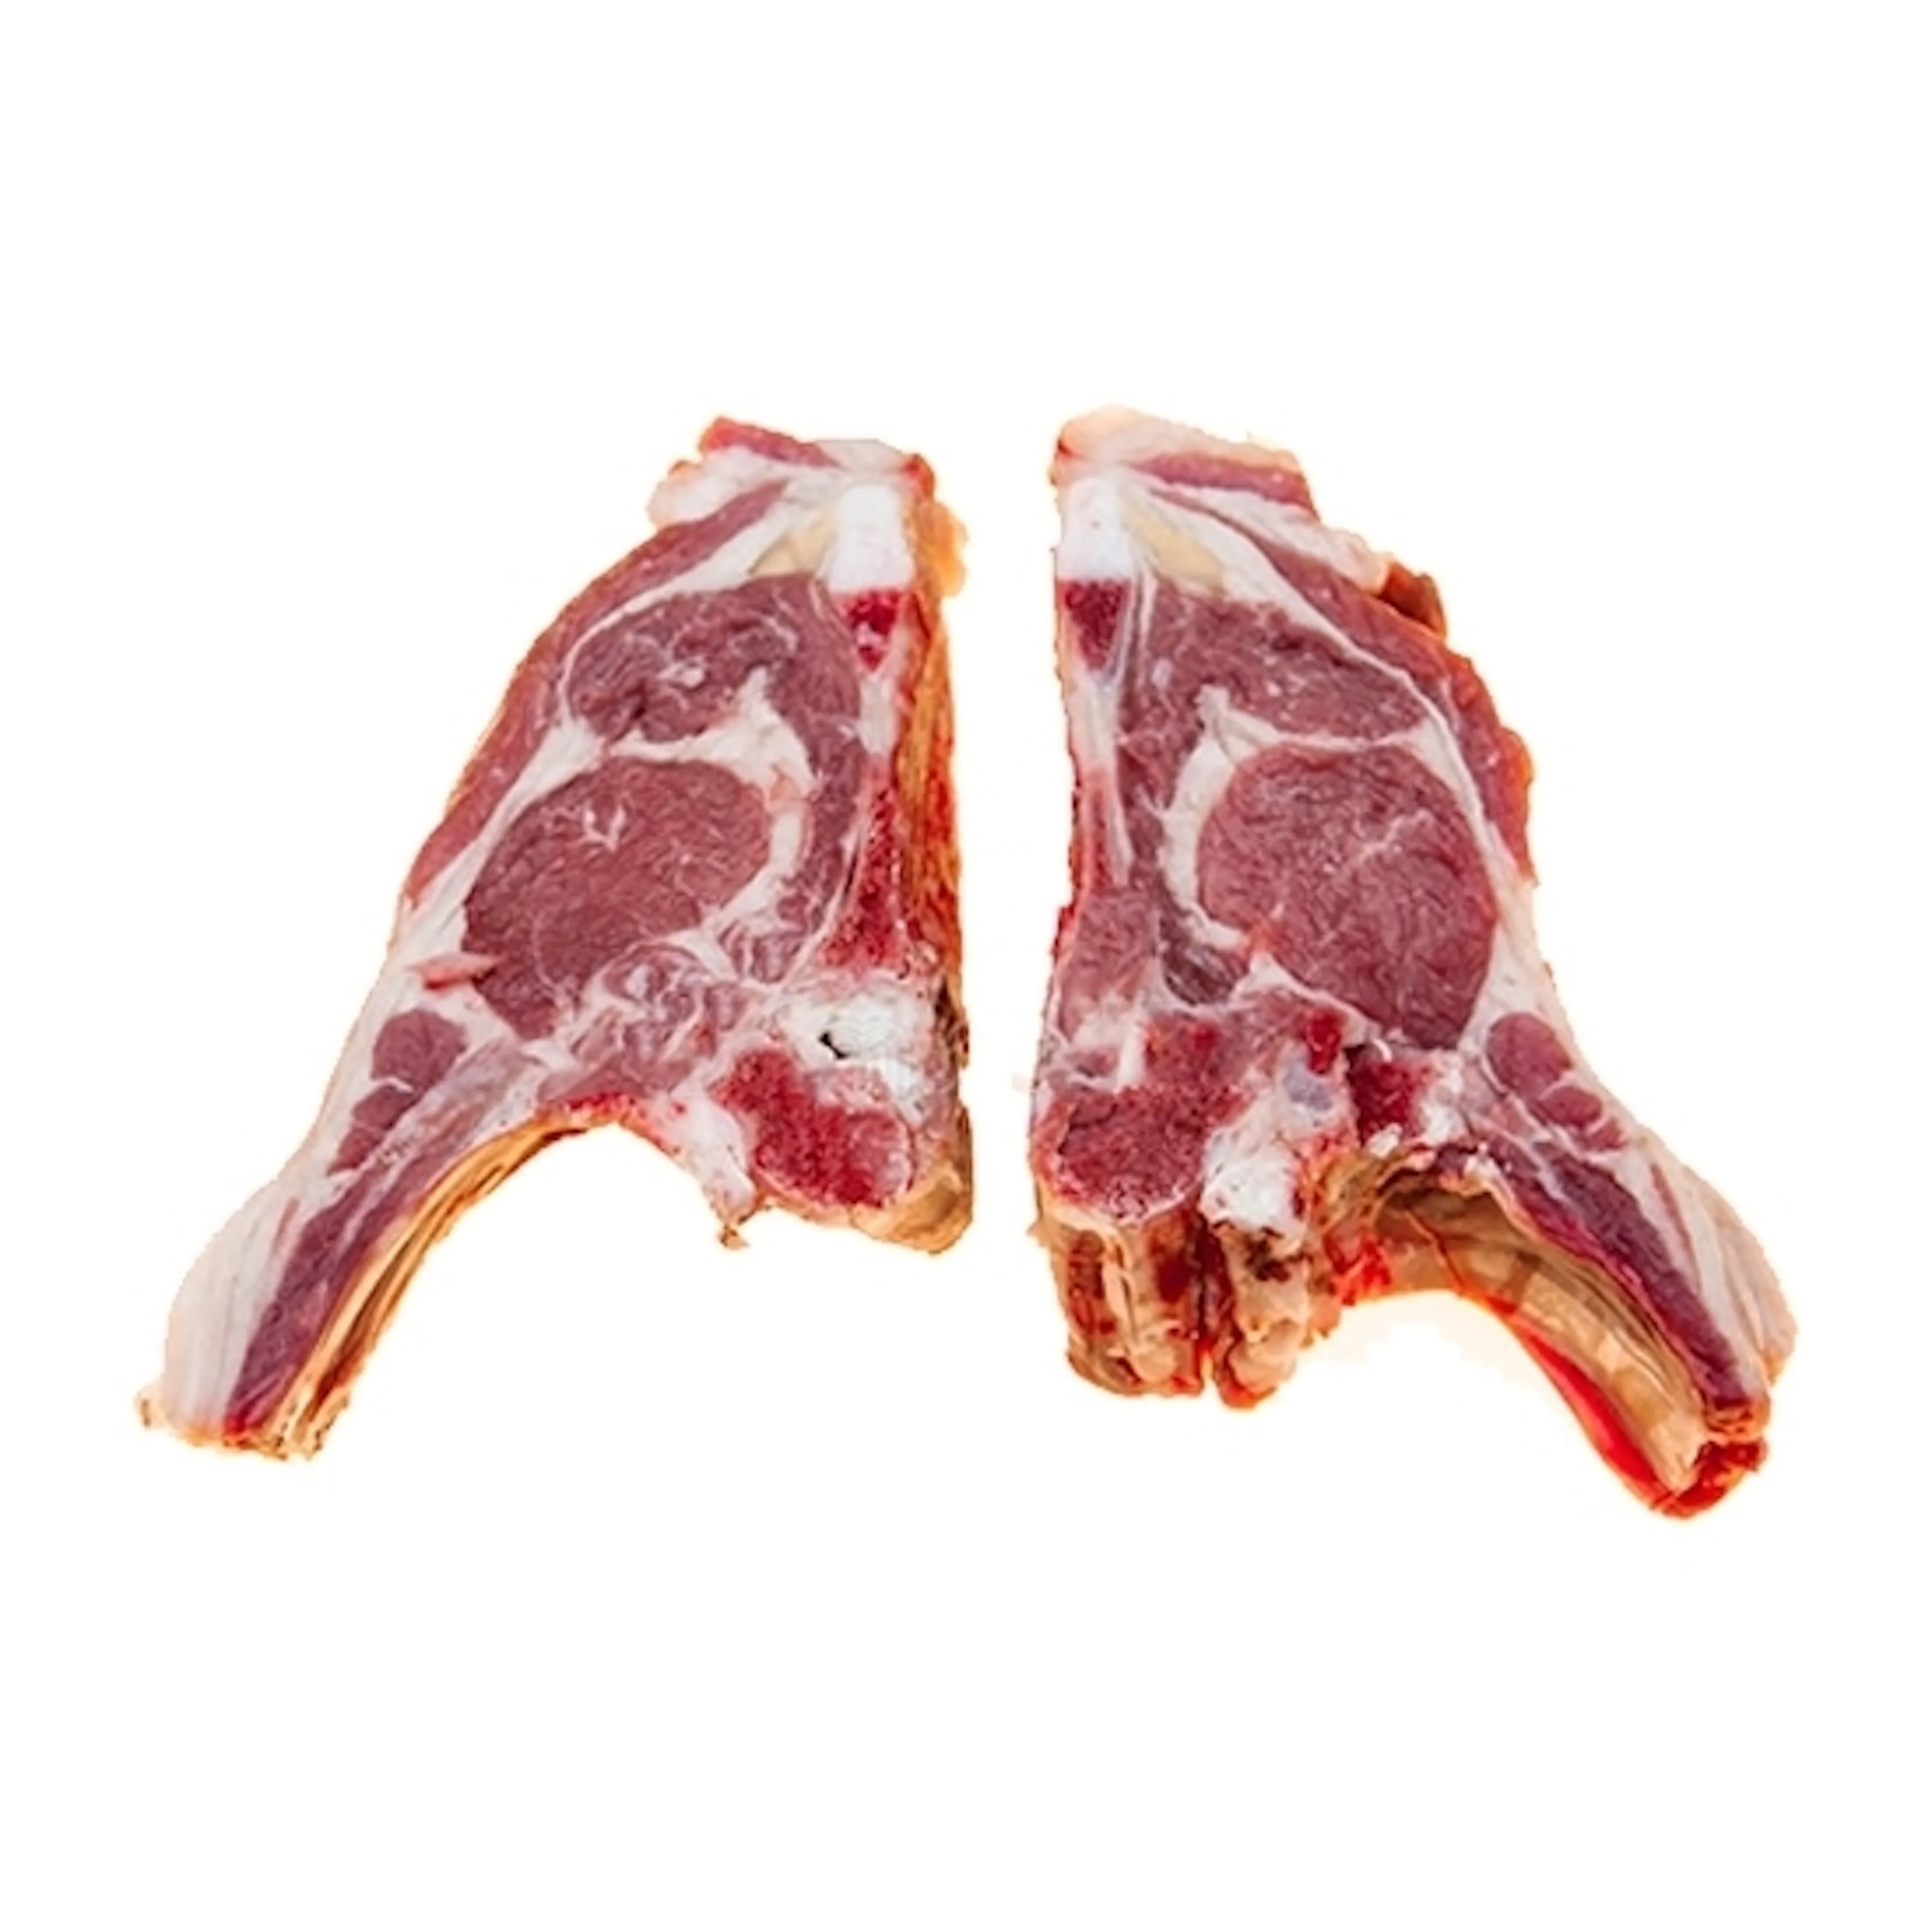 Obral daging tanpa tulang beku/segar kualitas tinggi